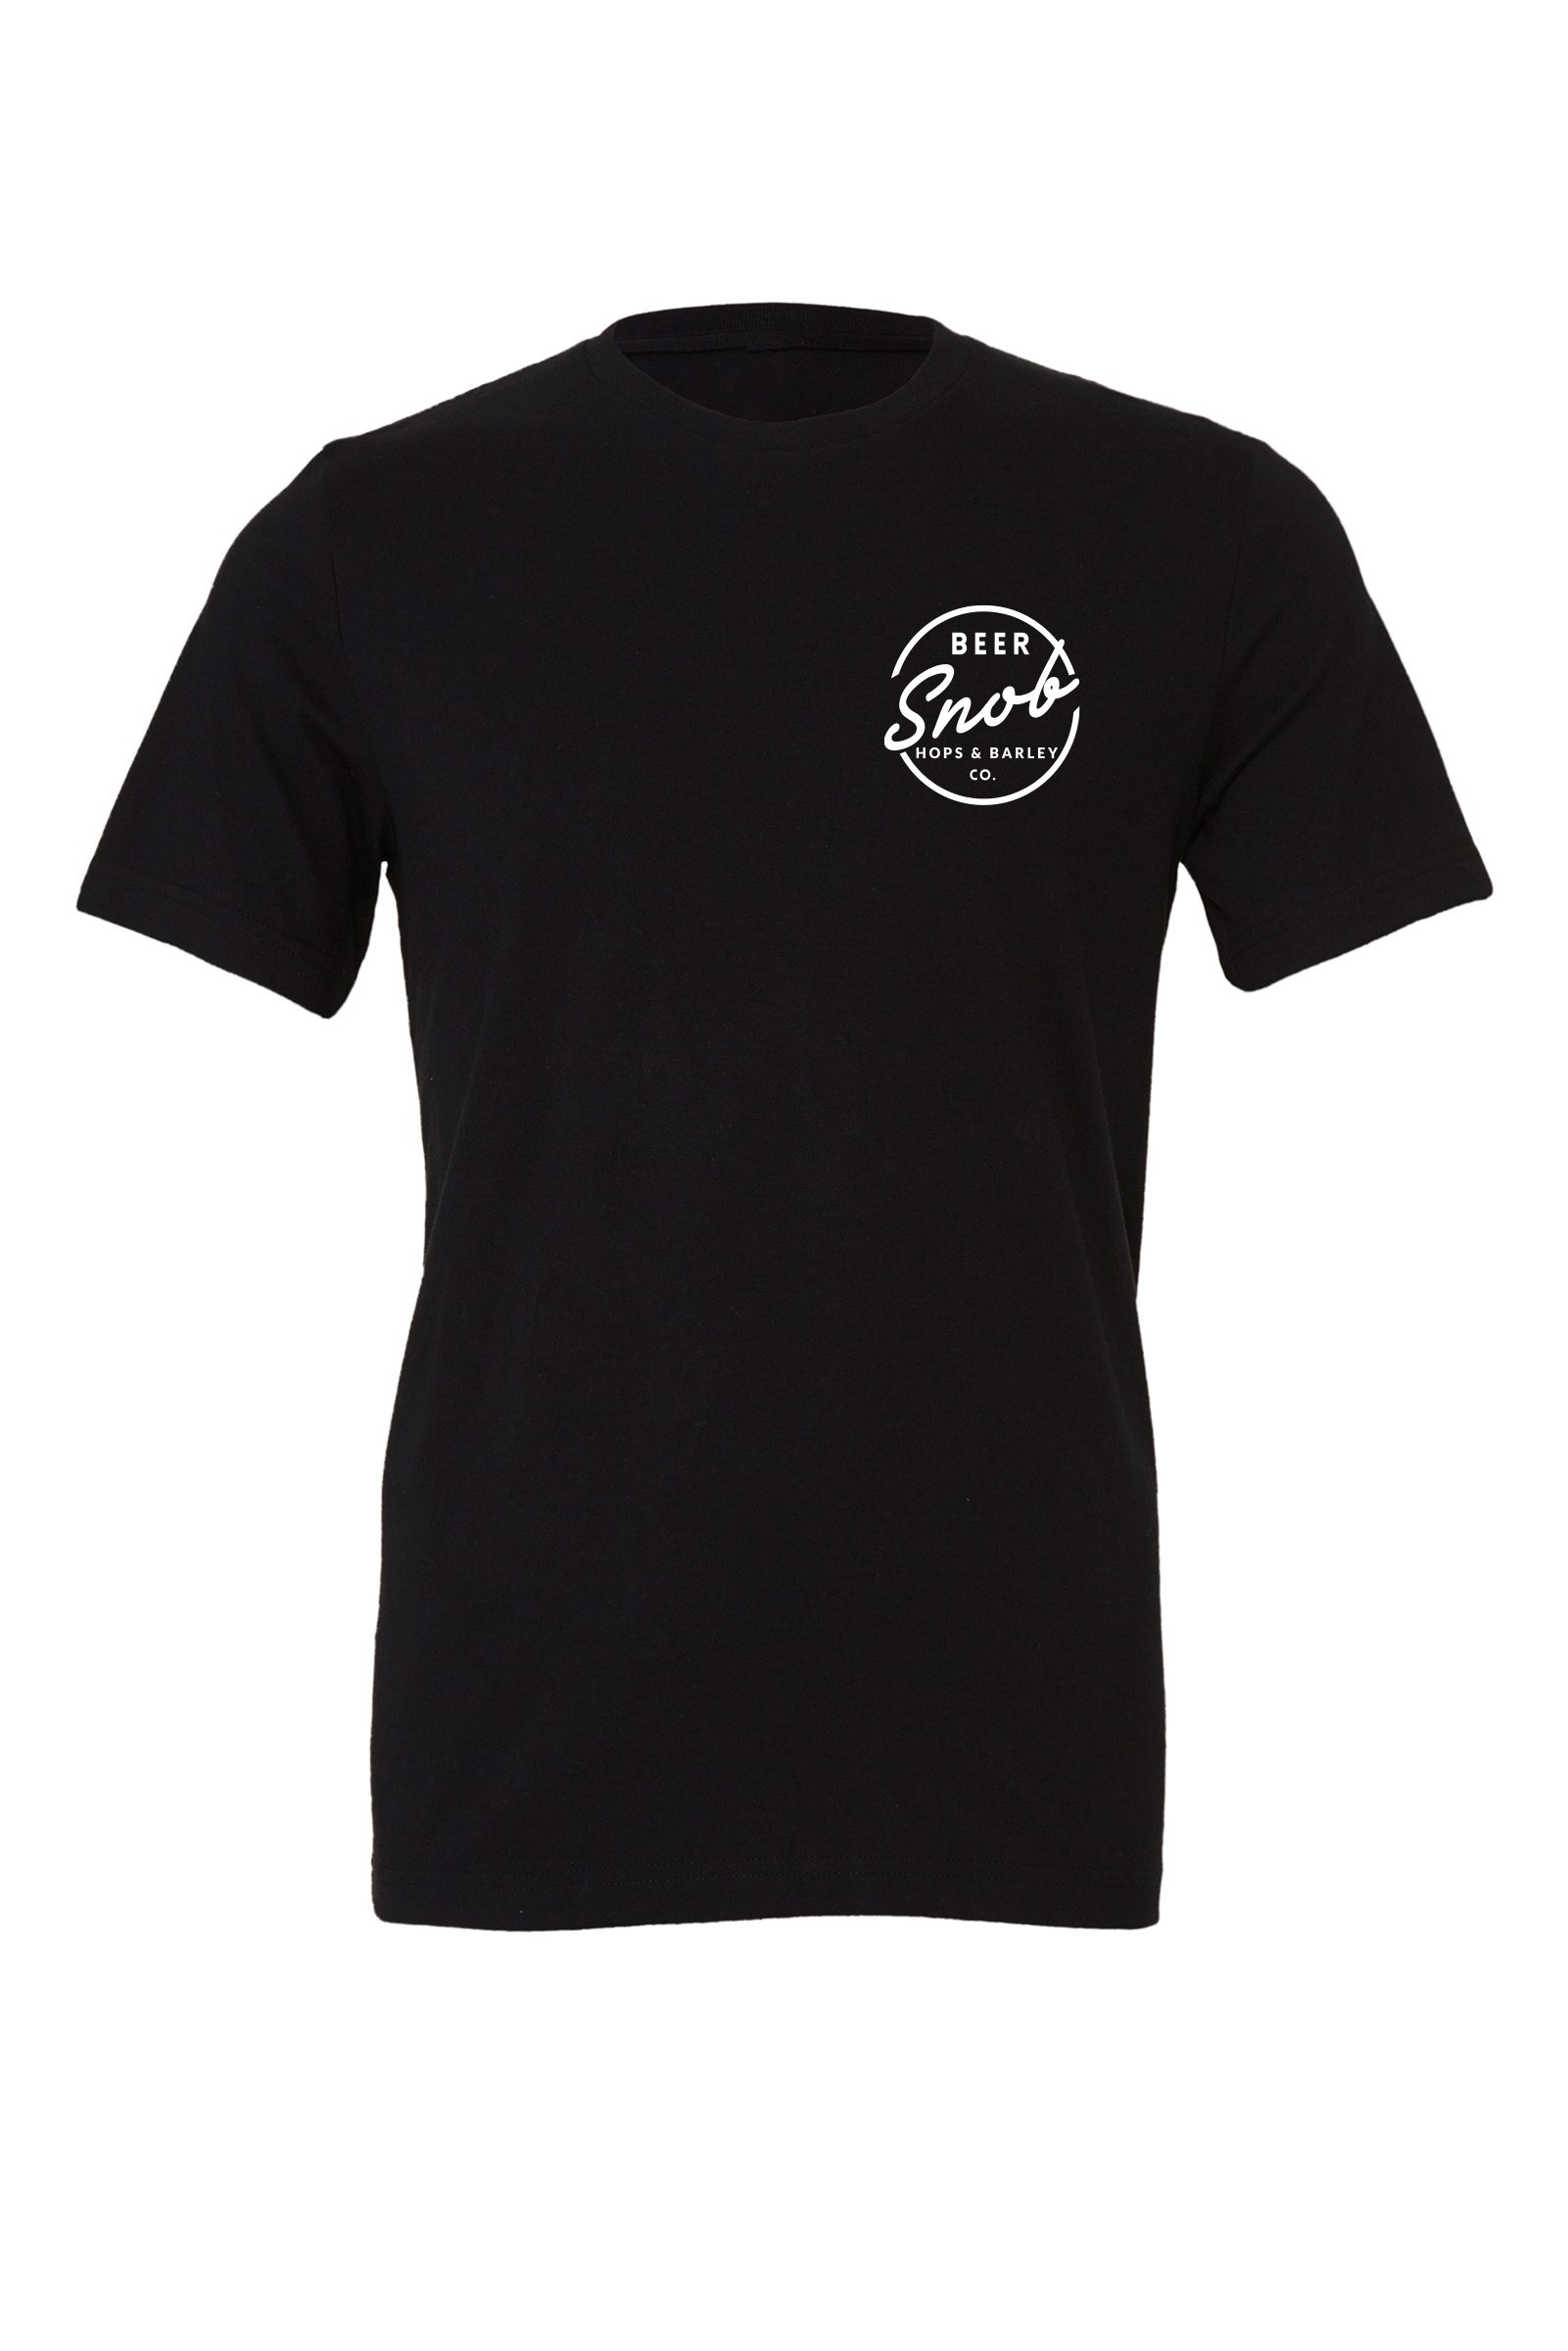 Beer Snob T-Shirt | Hops & Barley Co.